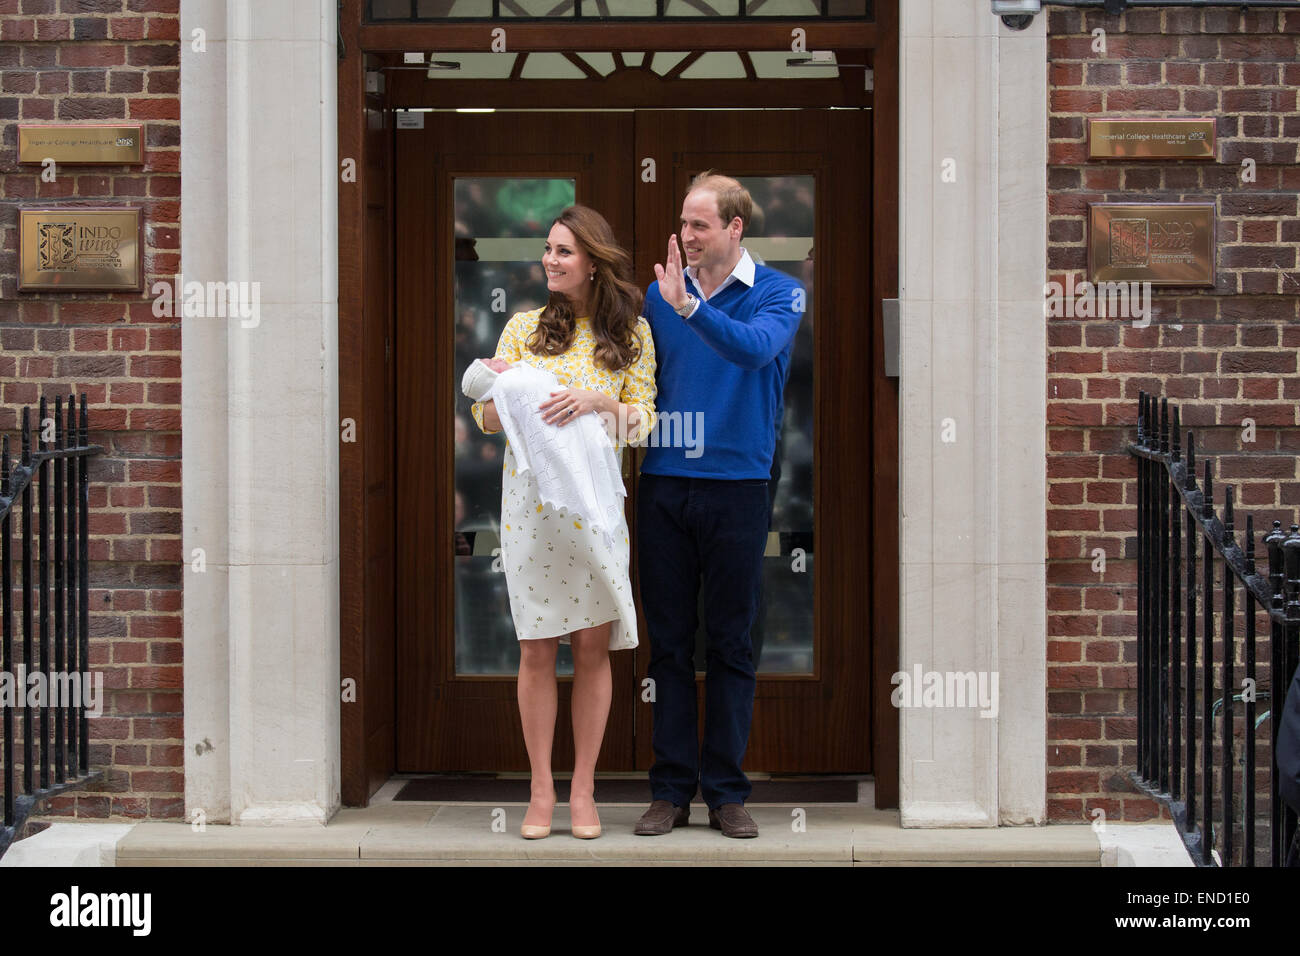 Le prince William et Catherine, duchesse de Cambridge montrent leur nouveau bébé fille pour le monde sur les marches de l'aile Lindo. Banque D'Images